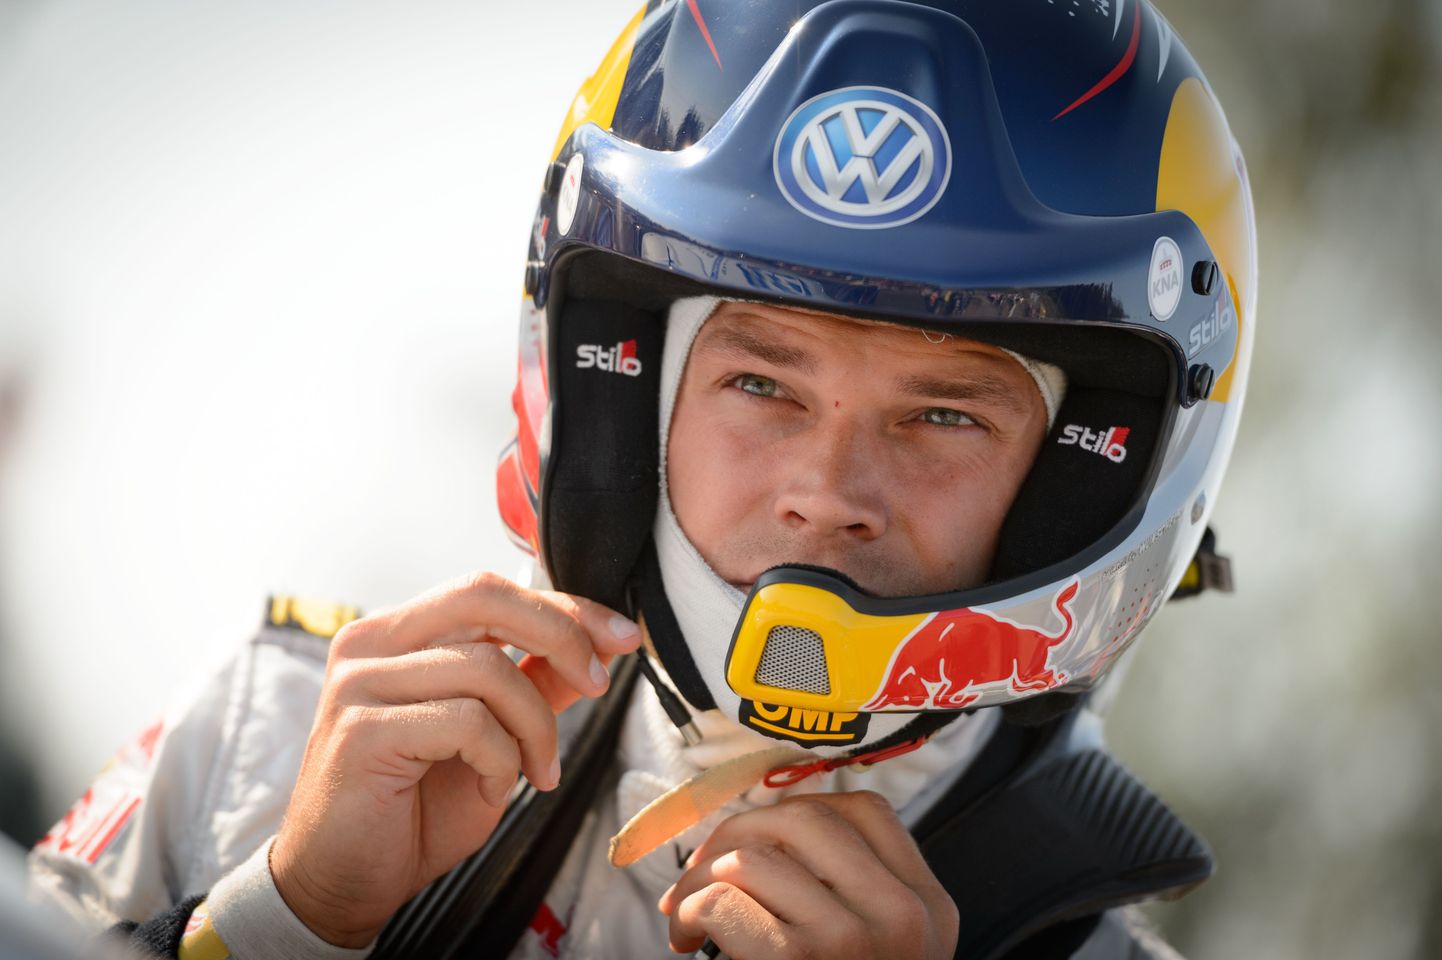 Täna hommikul toimunud Soome MM-ralli testikatsel näitas head kiirust Ott Tänak, kes sai WRC2 klassis kirja kiireima aja. Karl Kruuda oli seitsmes ning kaotas kaasmaalasele 5,4 sekundiga. Üldarvestuse parim oli kohalik ralliäss Jari-Matti Latvala.